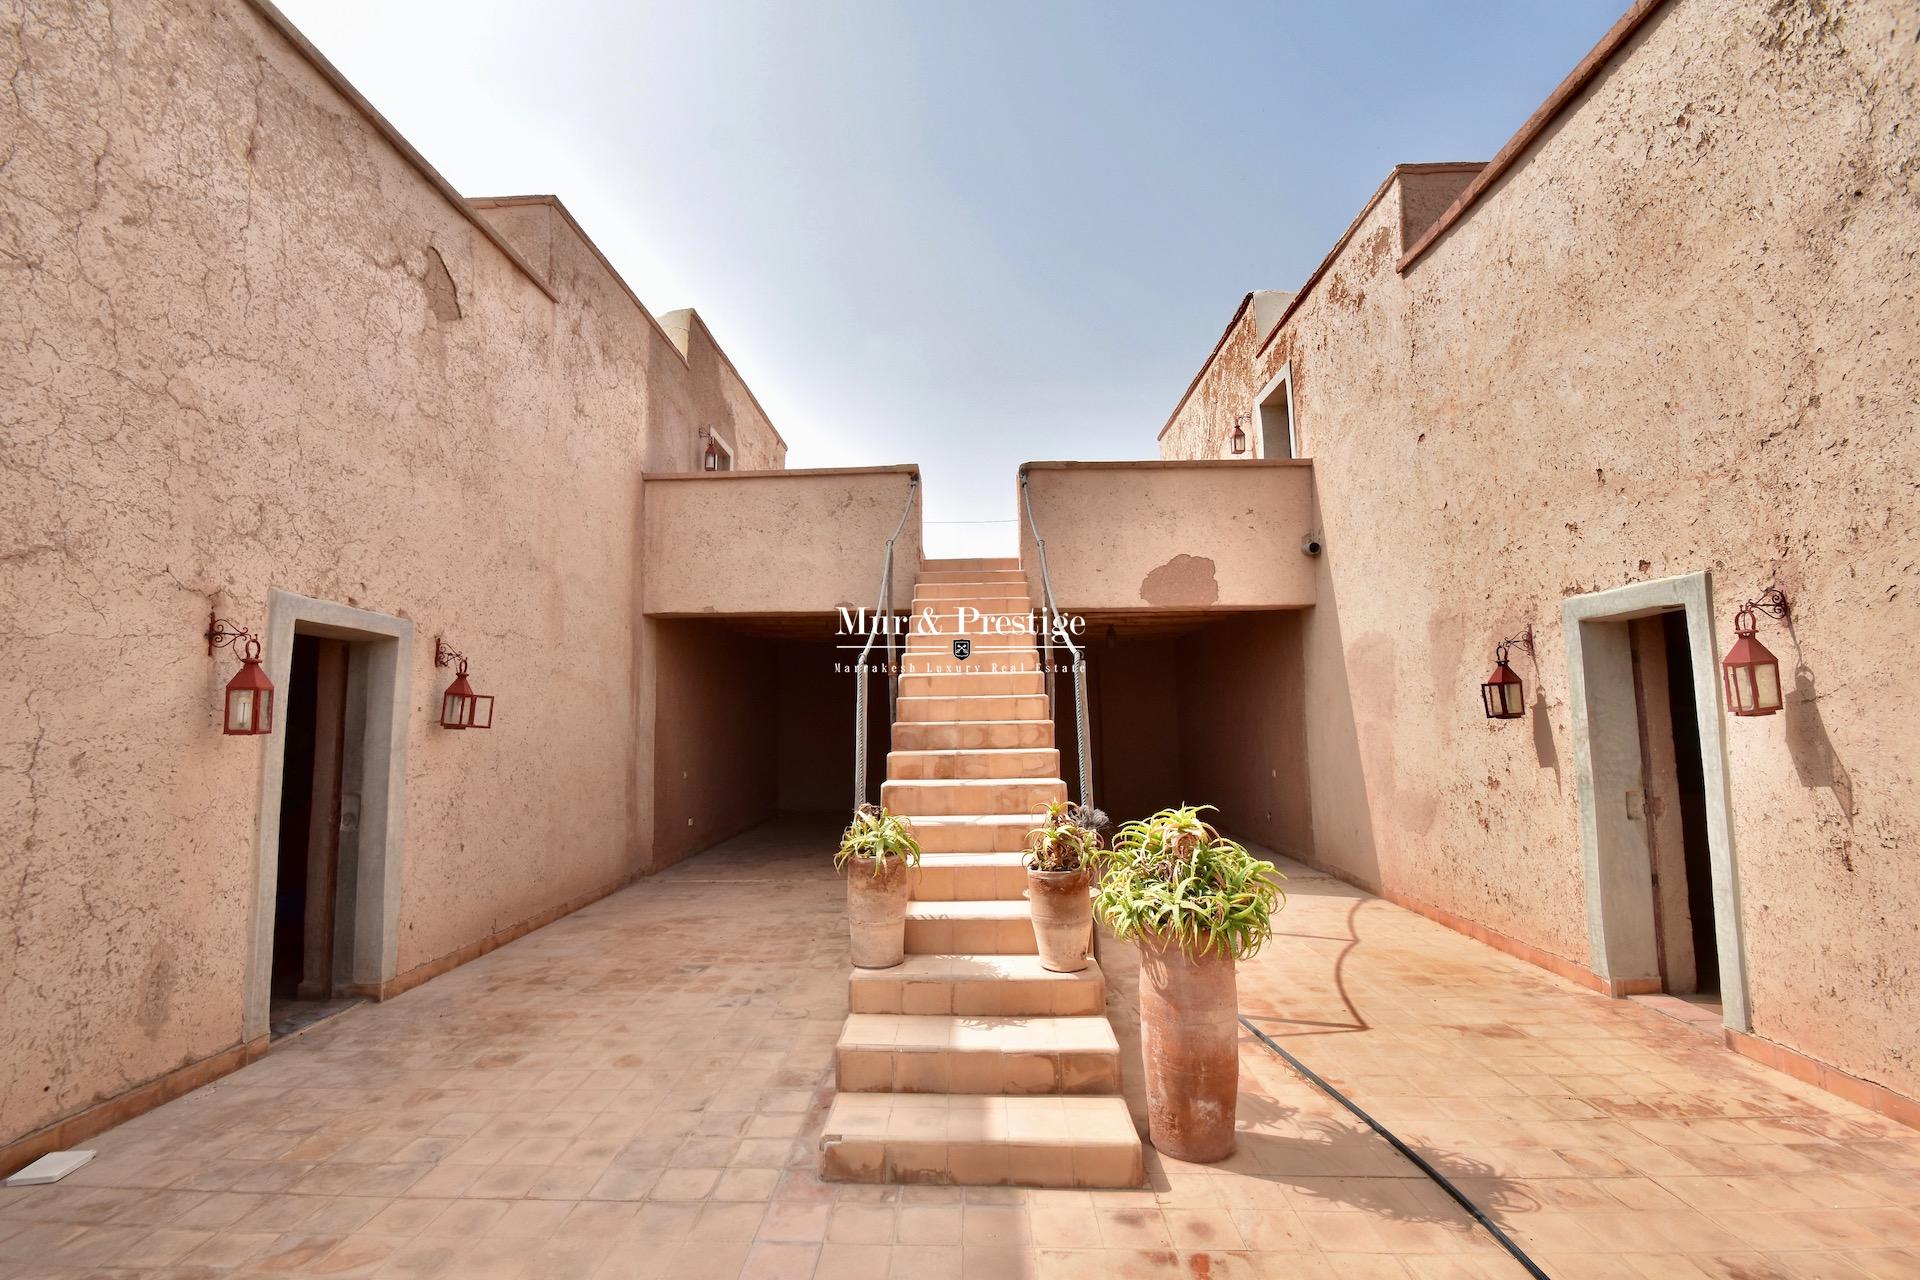 Maison de style berbère à vendre à Marrakech